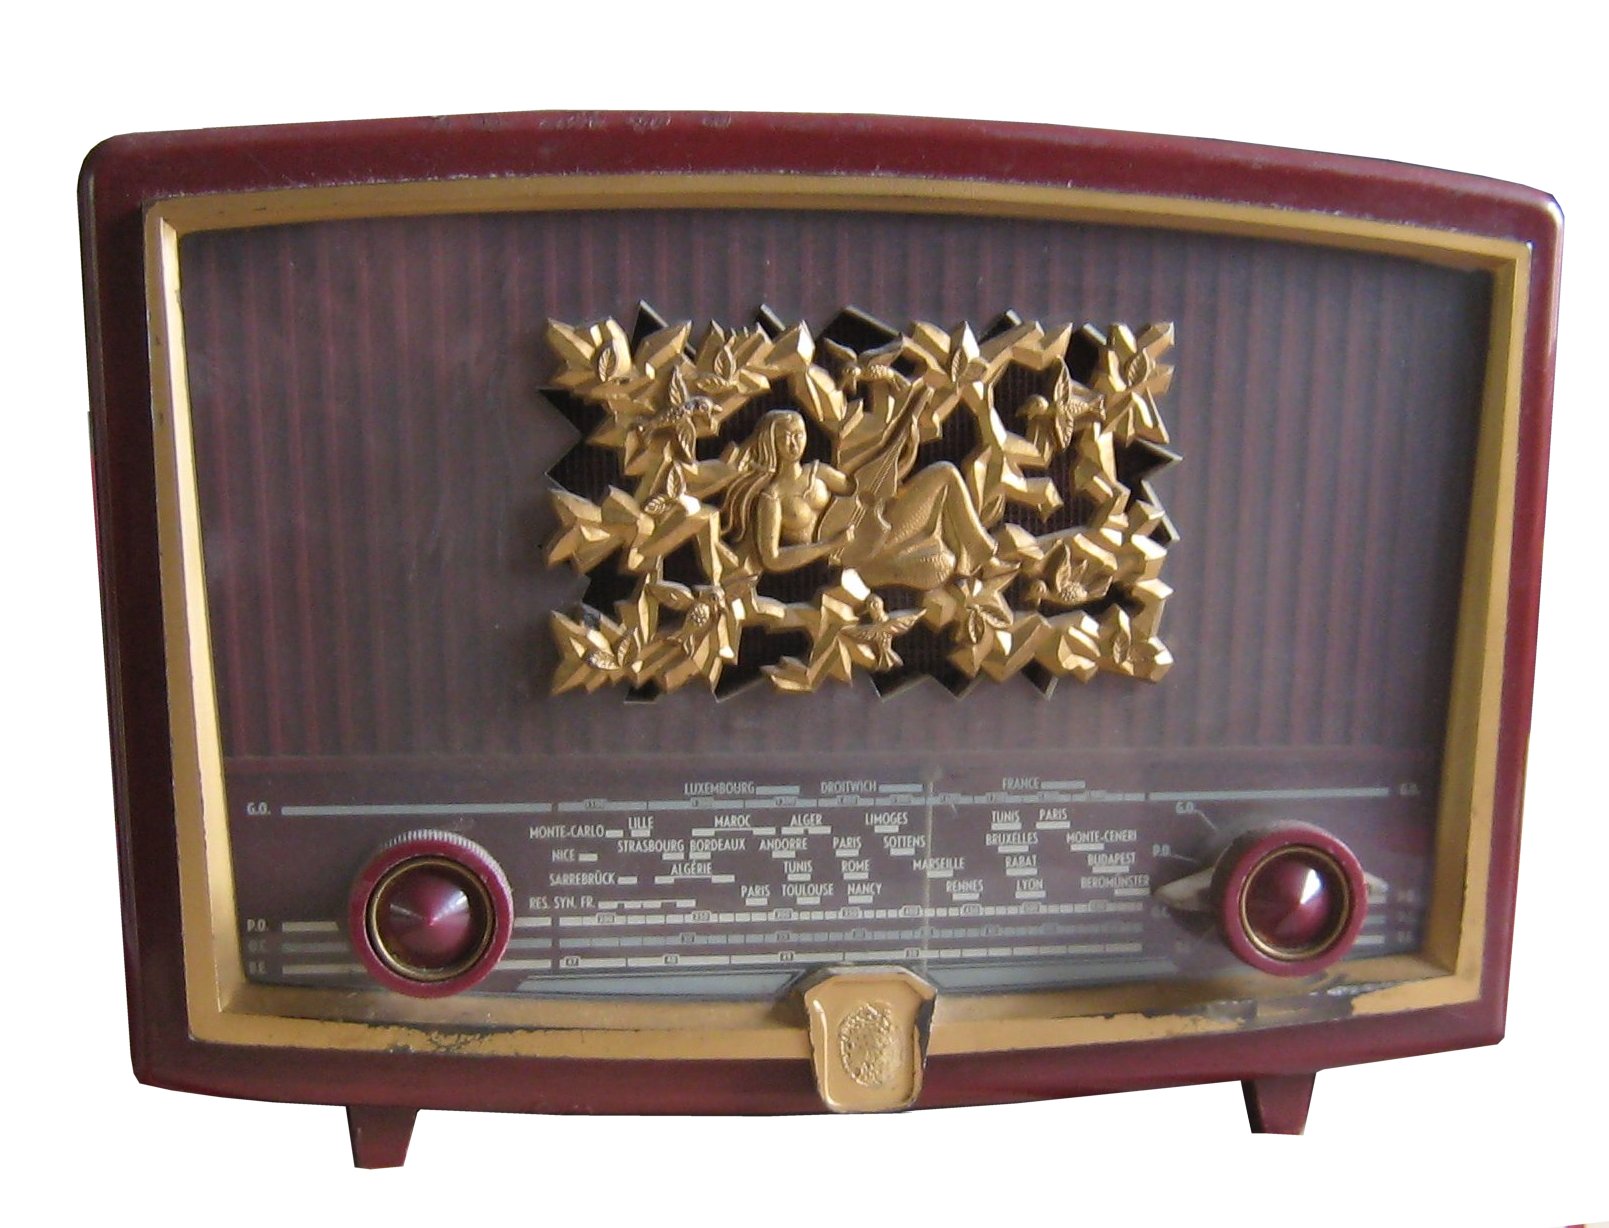 Radiola RA155U Radiolinette 1955